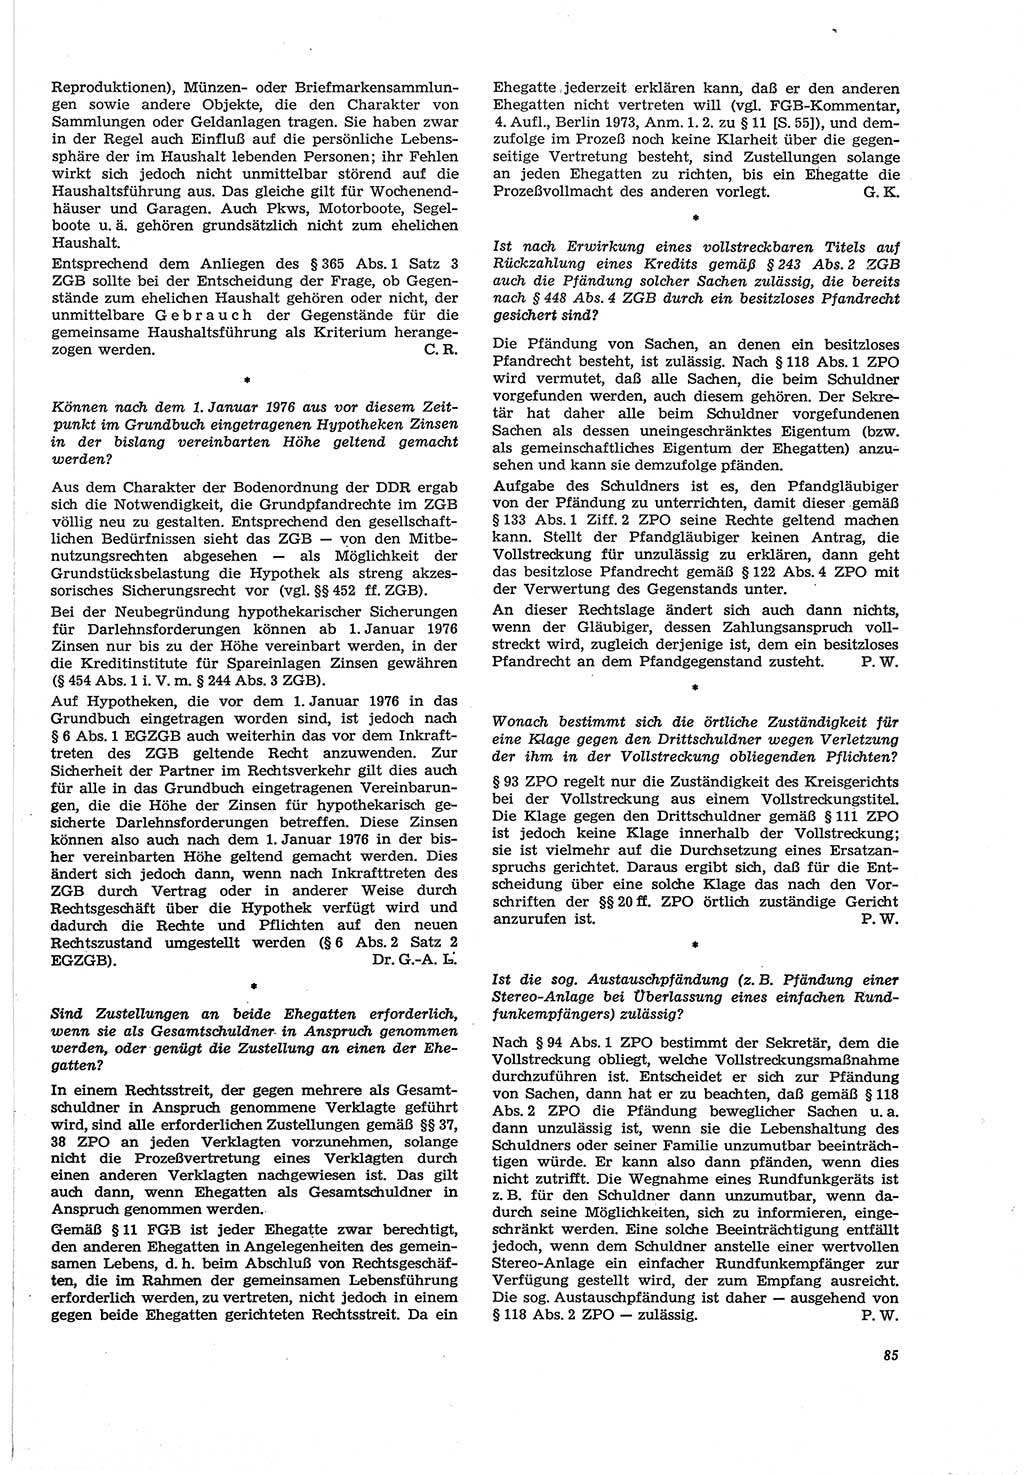 Neue Justiz (NJ), Zeitschrift für Recht und Rechtswissenschaft [Deutsche Demokratische Republik (DDR)], 30. Jahrgang 1976, Seite 85 (NJ DDR 1976, S. 85)